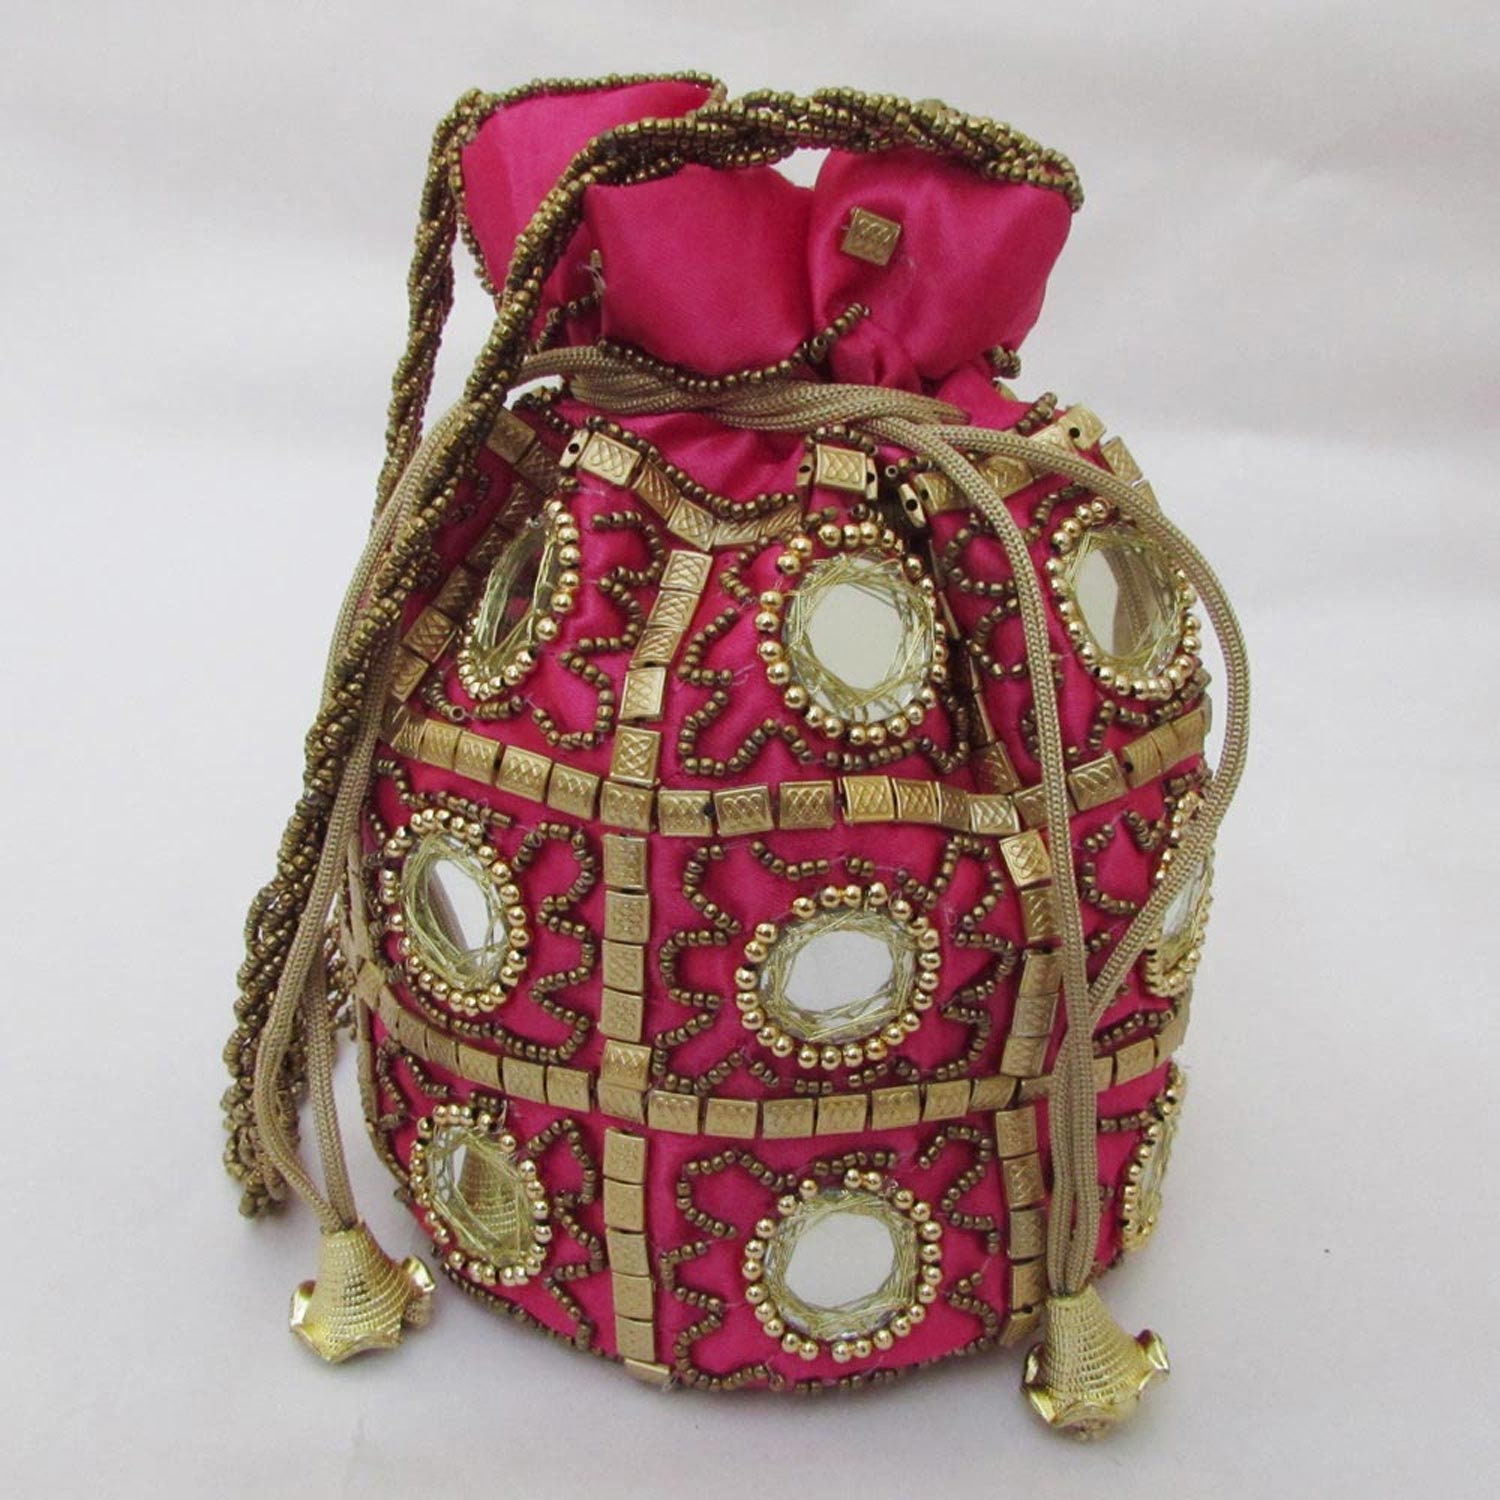 10 Pcs Wholesale Lot Potli Bag Boho Colorful Handmade Bag | Etsy